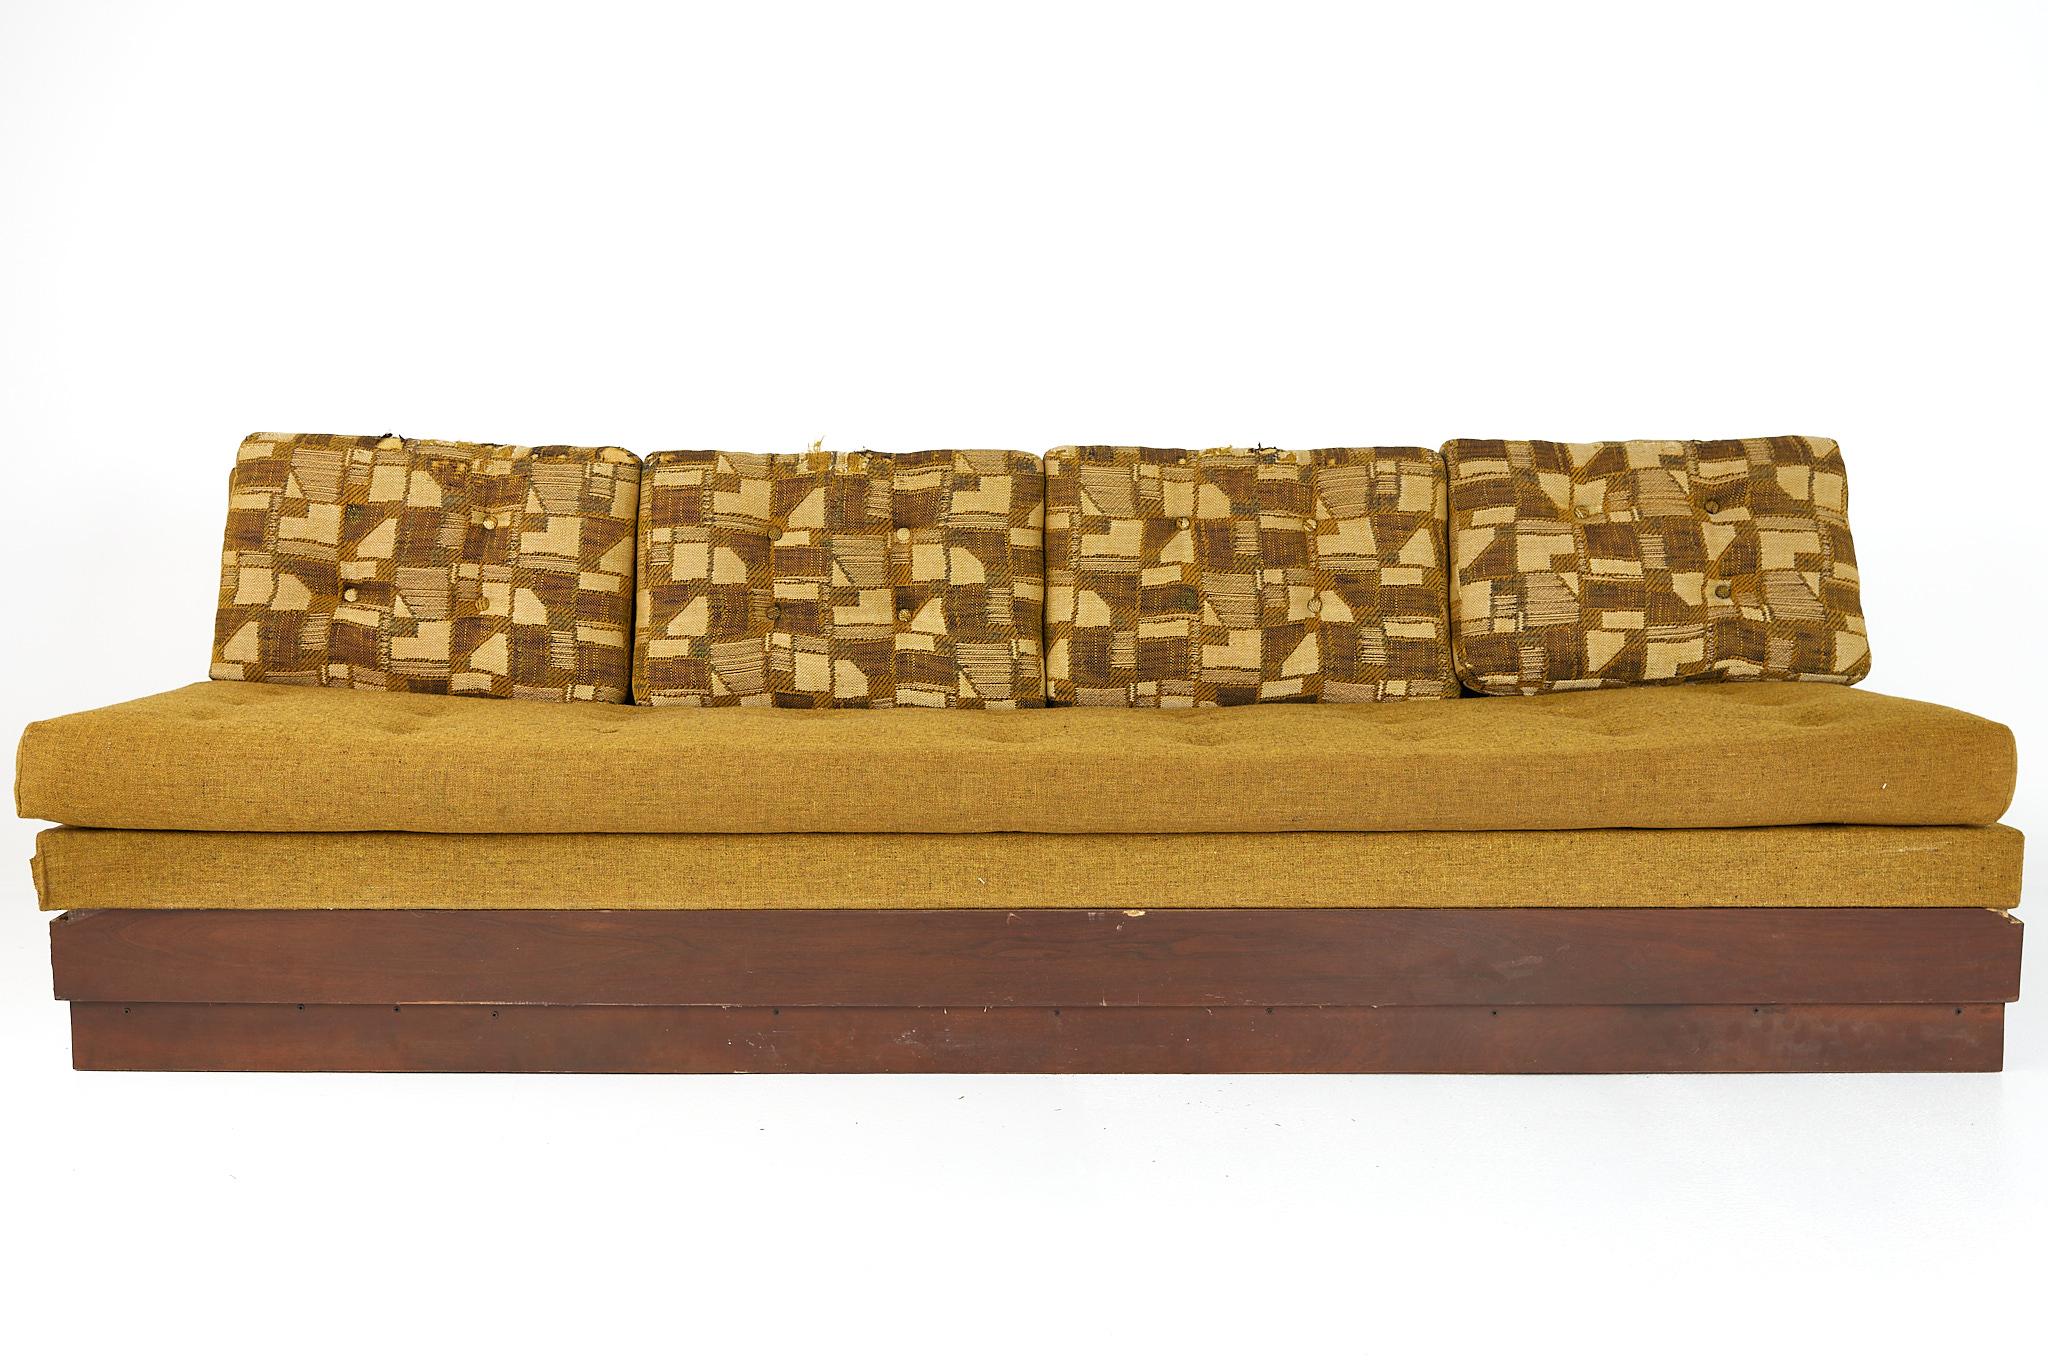 Adrian Pearsall für Craft Associates armloses Sofa aus der Mitte des Jahrhunderts

Dieses Sofa misst: 96 breit x 32 tief x 28,5 Zoll hoch, mit einer Sitzhöhe von 18 Zoll

Bereit für neue Polsterung

Alle Möbelstücke können in dem Zustand